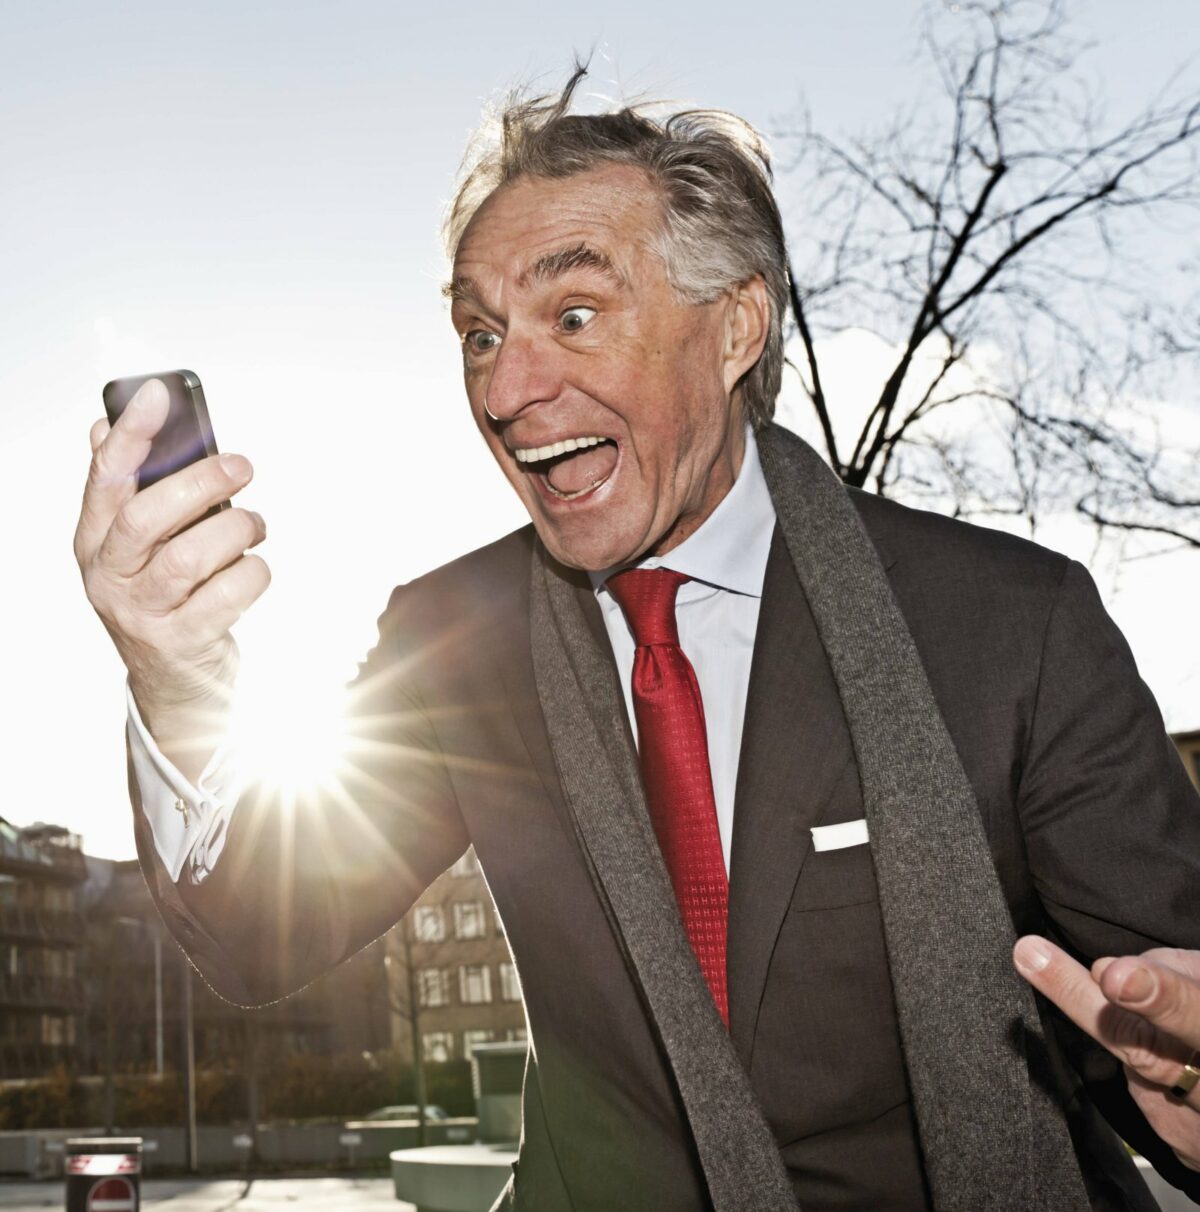 Älterer Herr im Anzug starrt begeistert auf sein Smartphone.